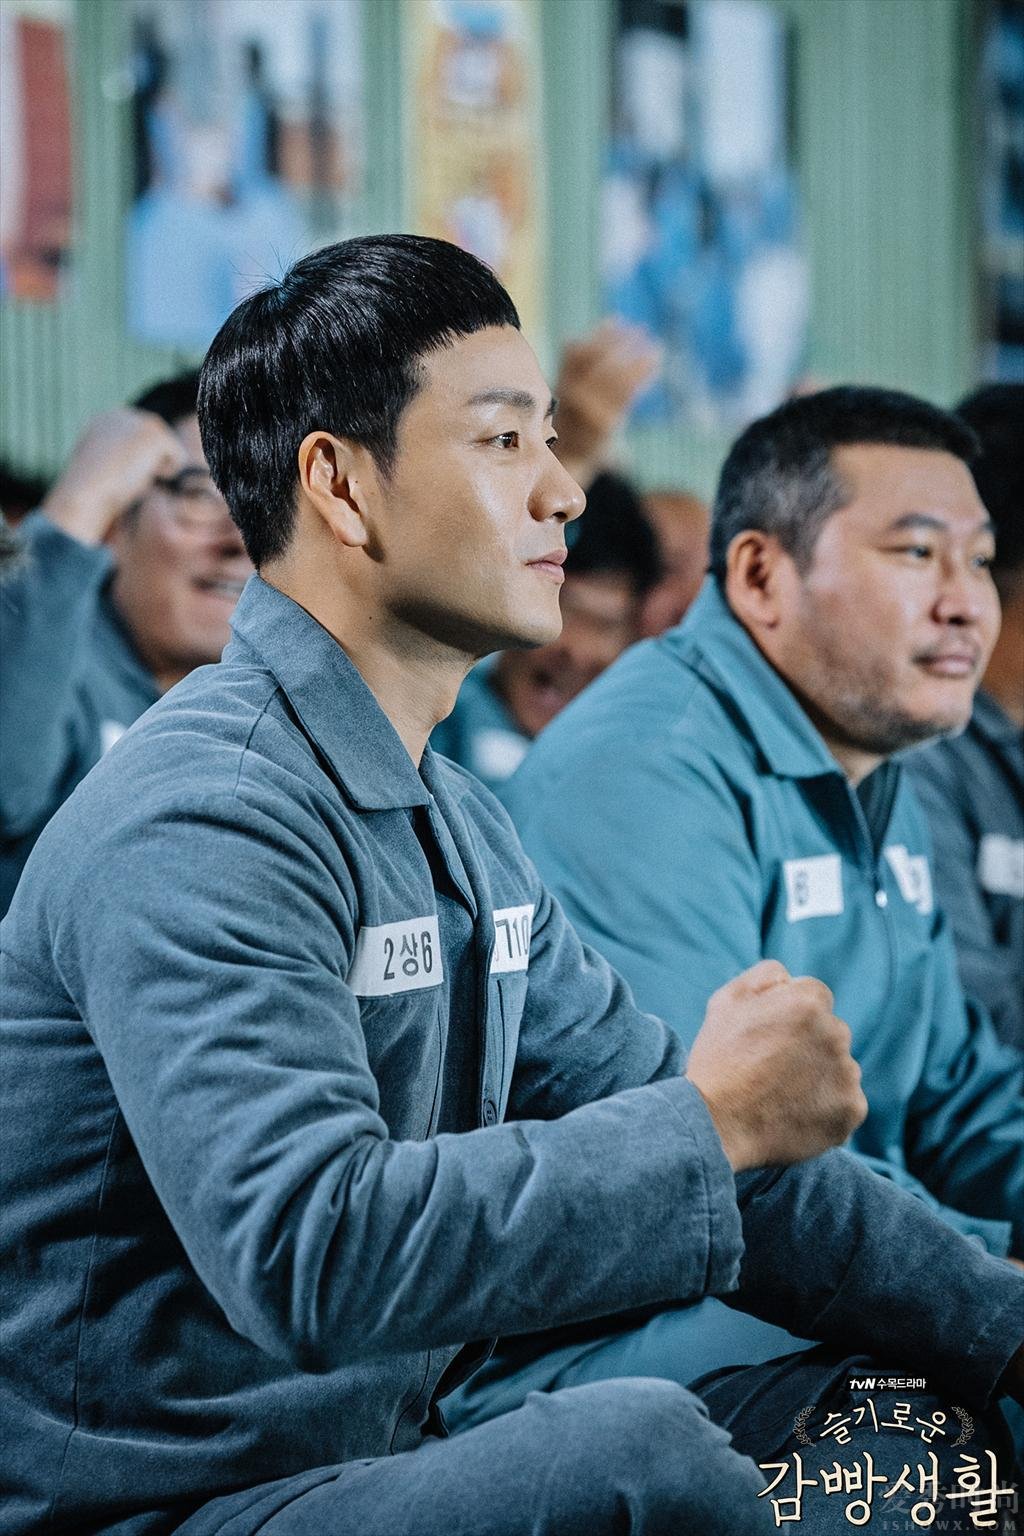 韩剧《机智的监狱生活》剧情介绍 机智的监狱生活周几更新